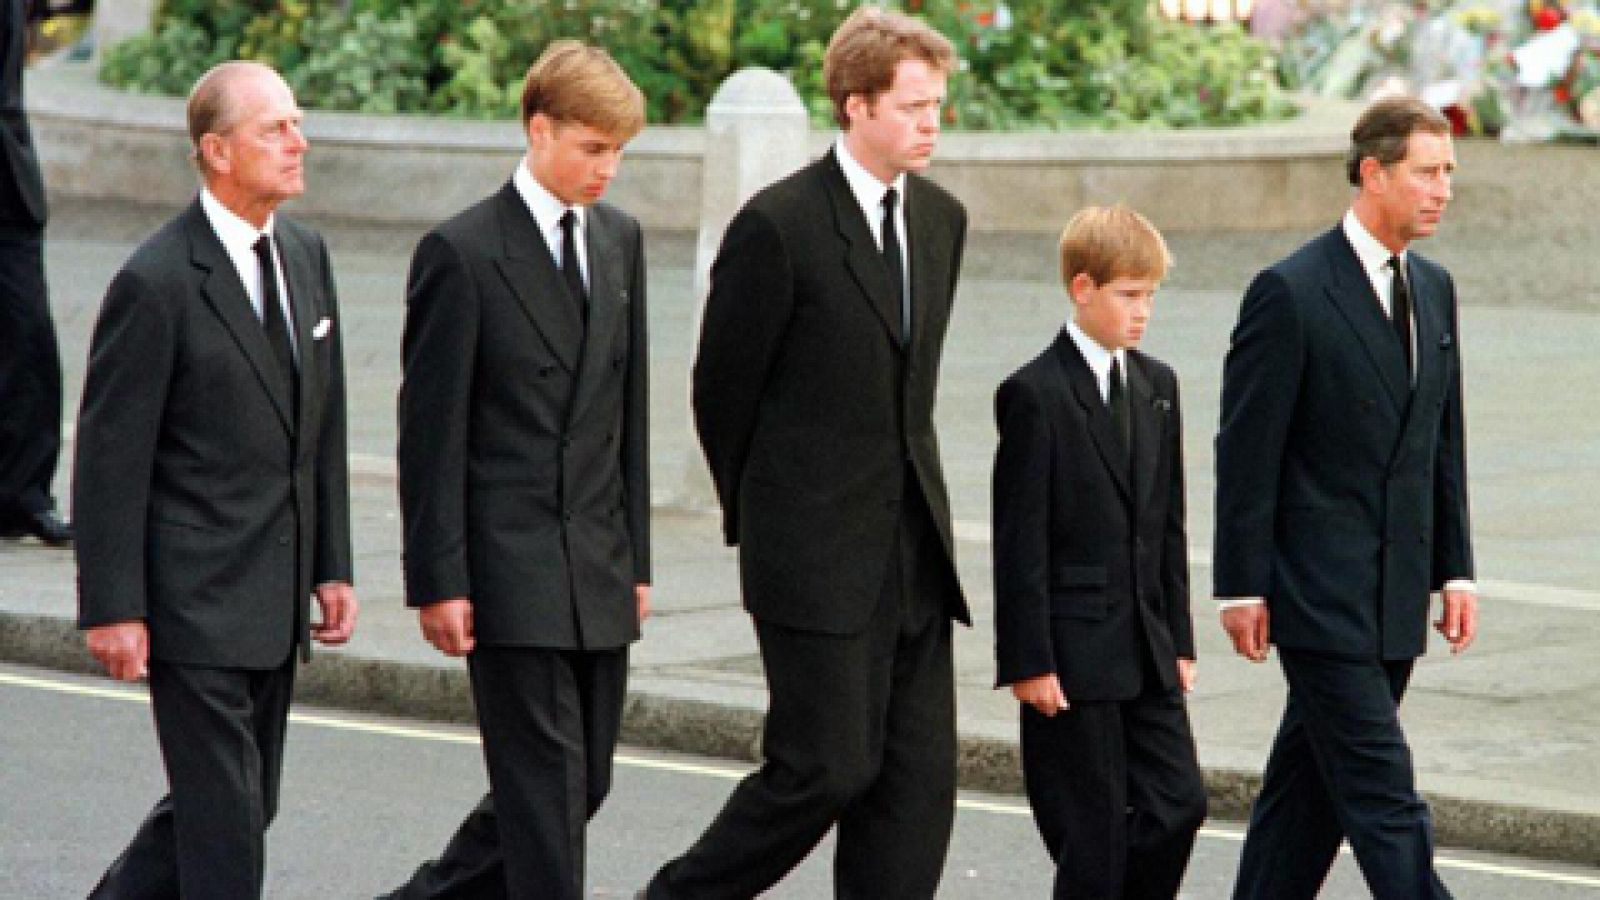 Fue Informe - Adi�s, Diana (Funeral de Diana de Gales) - Ver ahora 